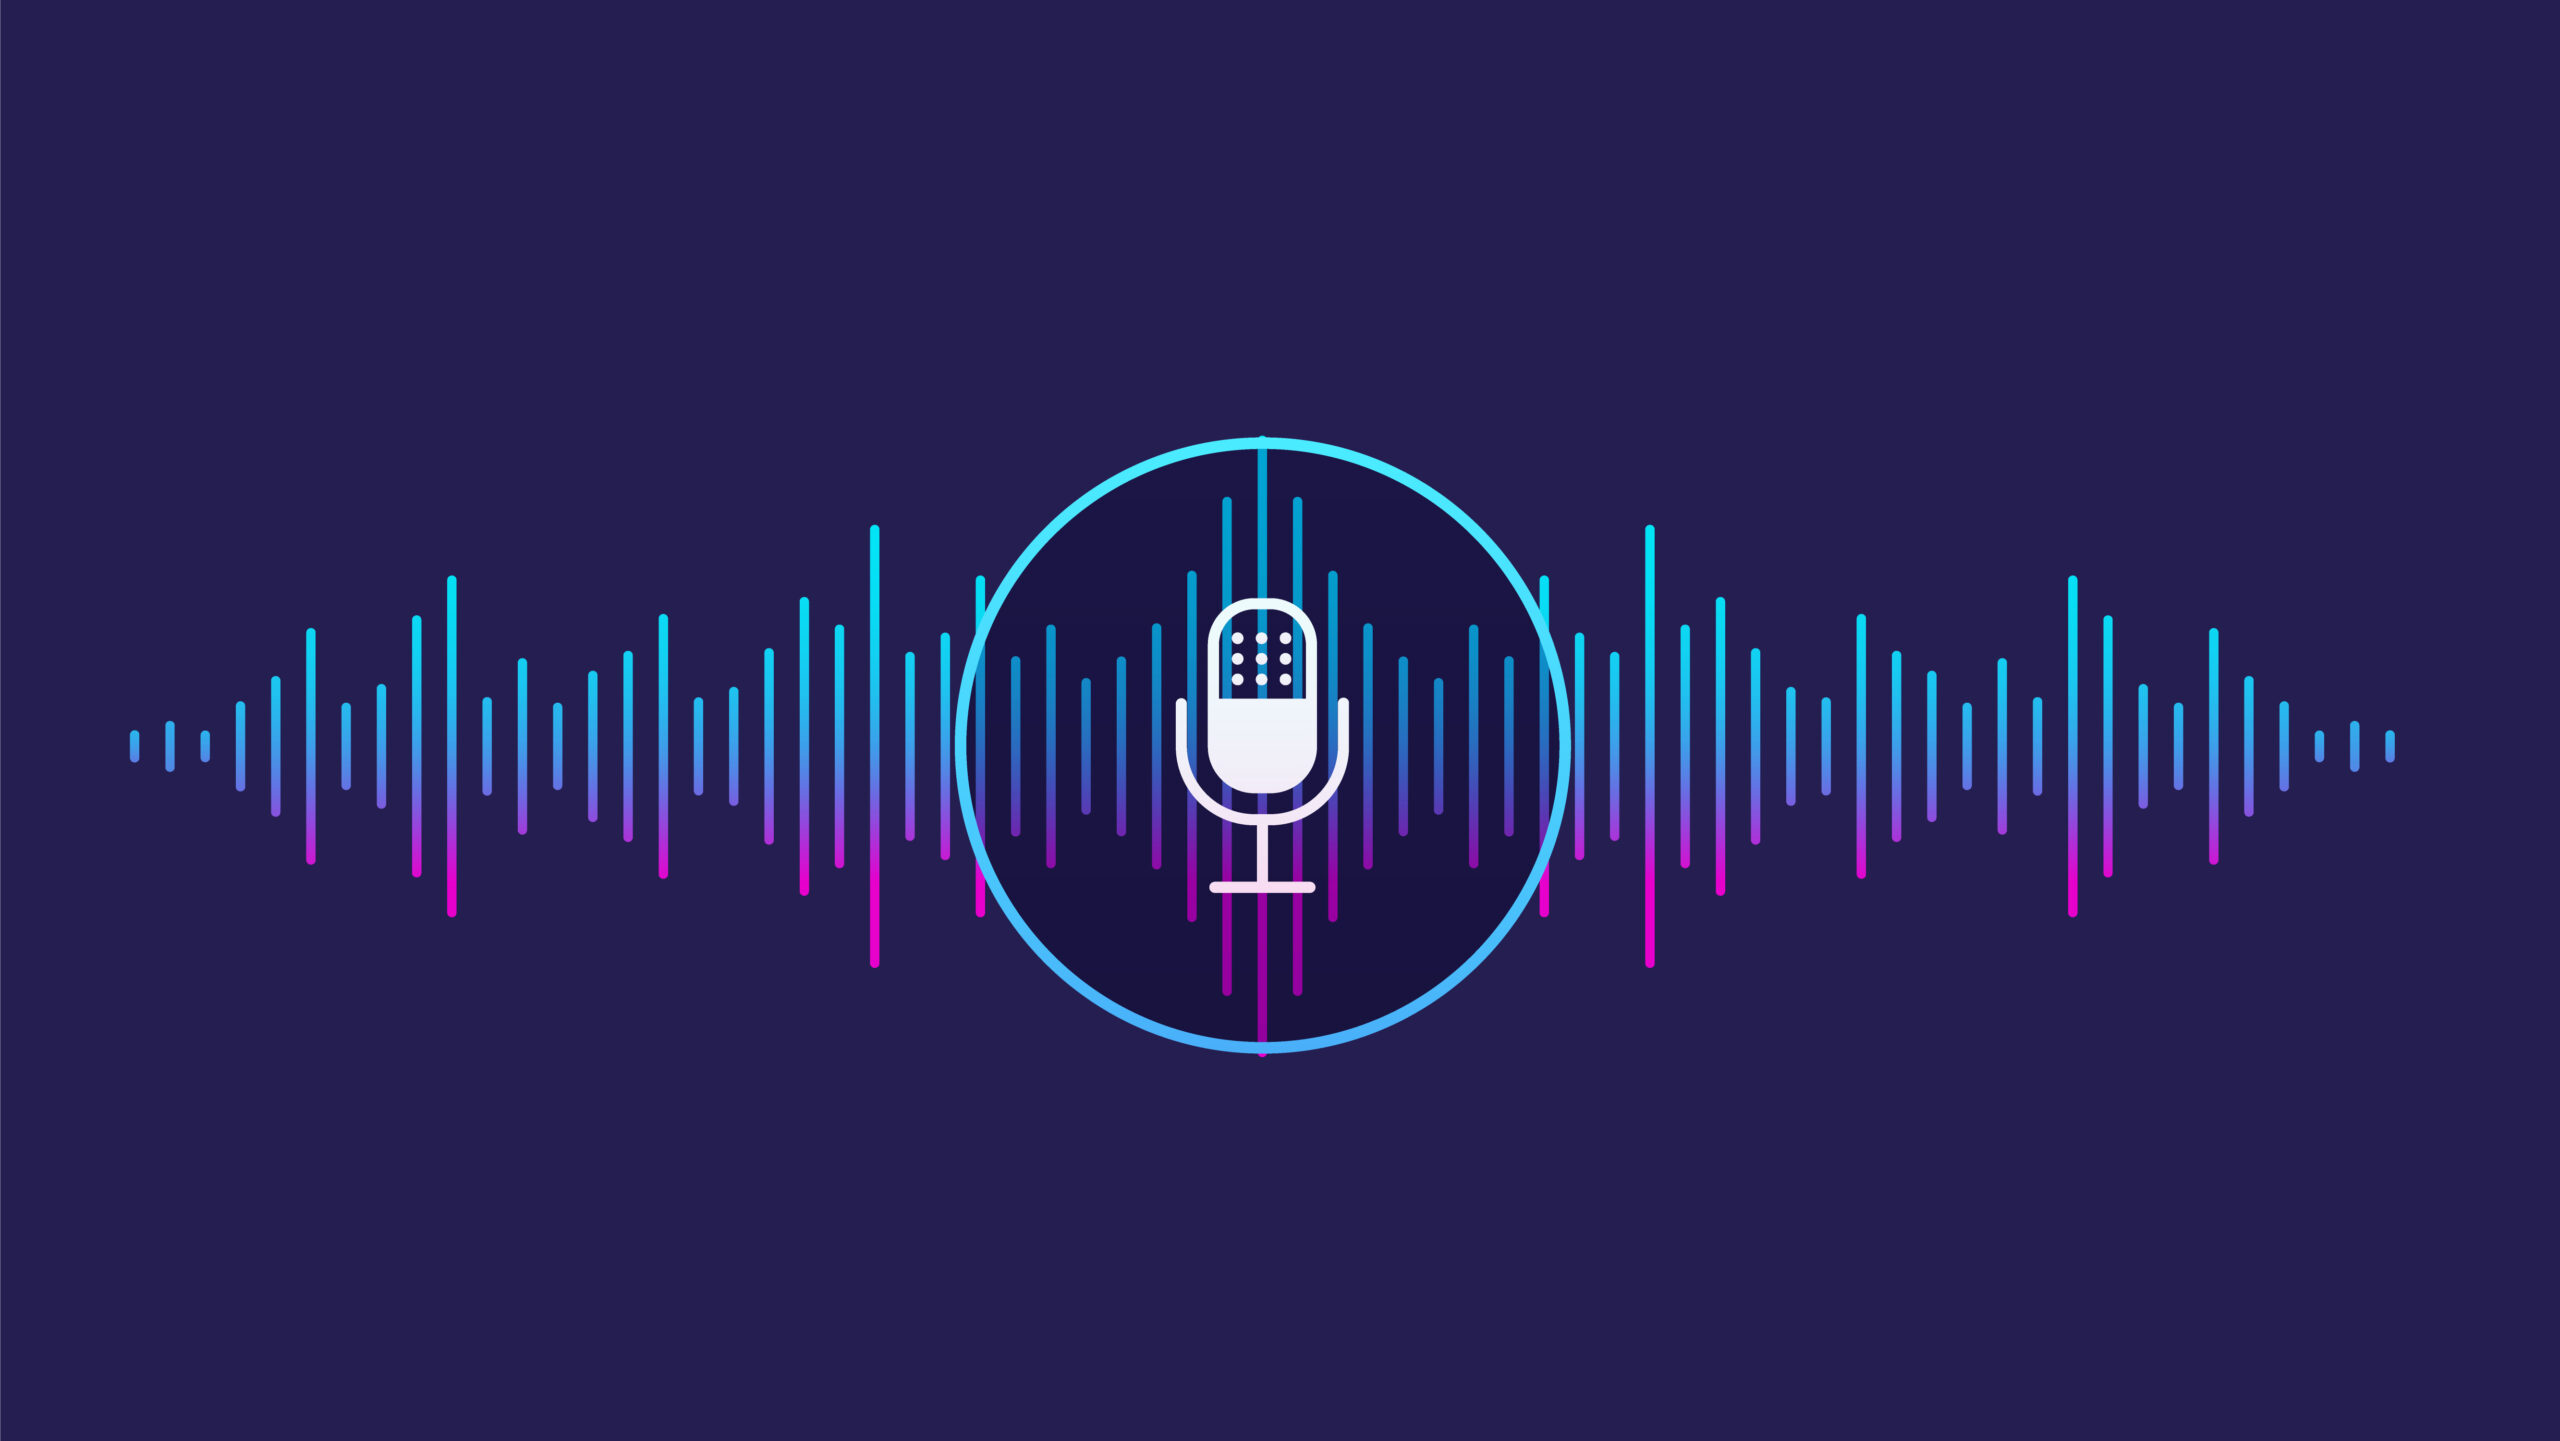 Podcast, radio : Quelle place pour l’audio en communication interne ? - COMPLET